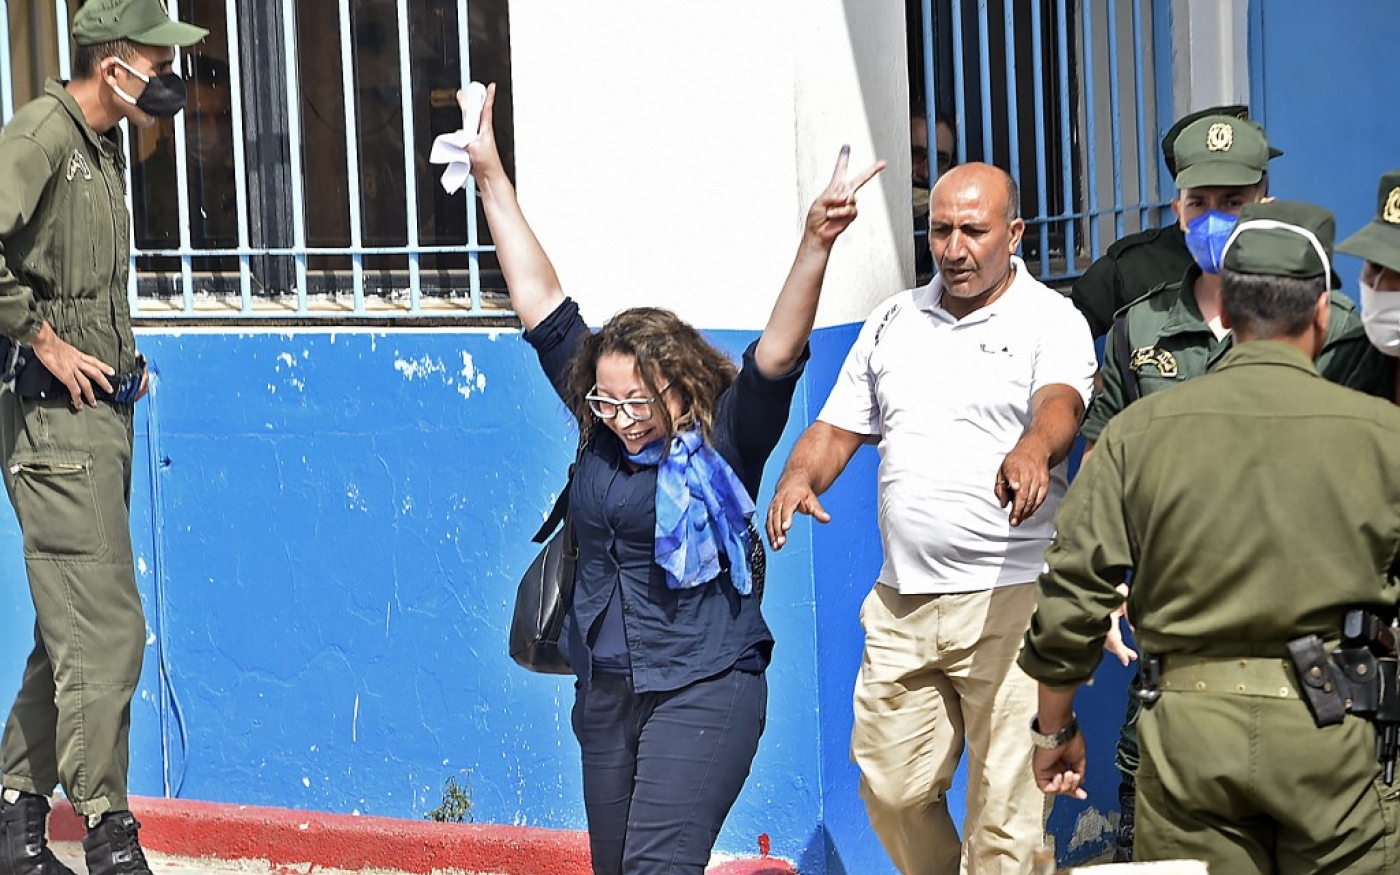 Amira Bouraoui avait été emprisonnée courant 2020 pour plusieurs chefs d’inculpation, notamment « atteinte à la personne du président ». Elle a été libérée le 2 juillet 2020 (AFP/Ryad Kramdi)